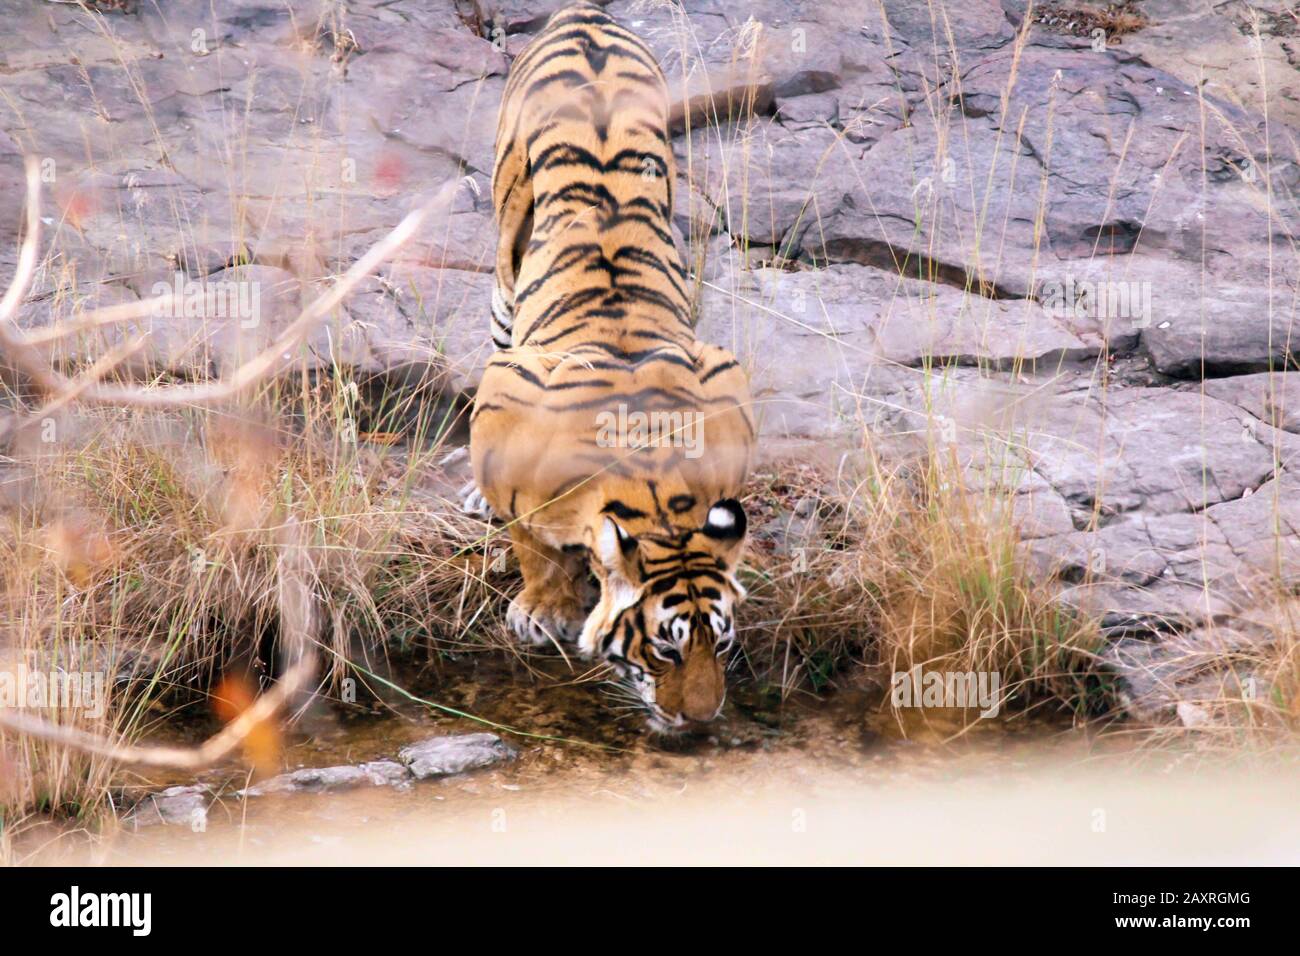 Tigre dans l'habitat de la nature. Tigre homme eau potable. Faune avec danger animal. Été chaud au Rajasthan, Inde. Banque D'Images